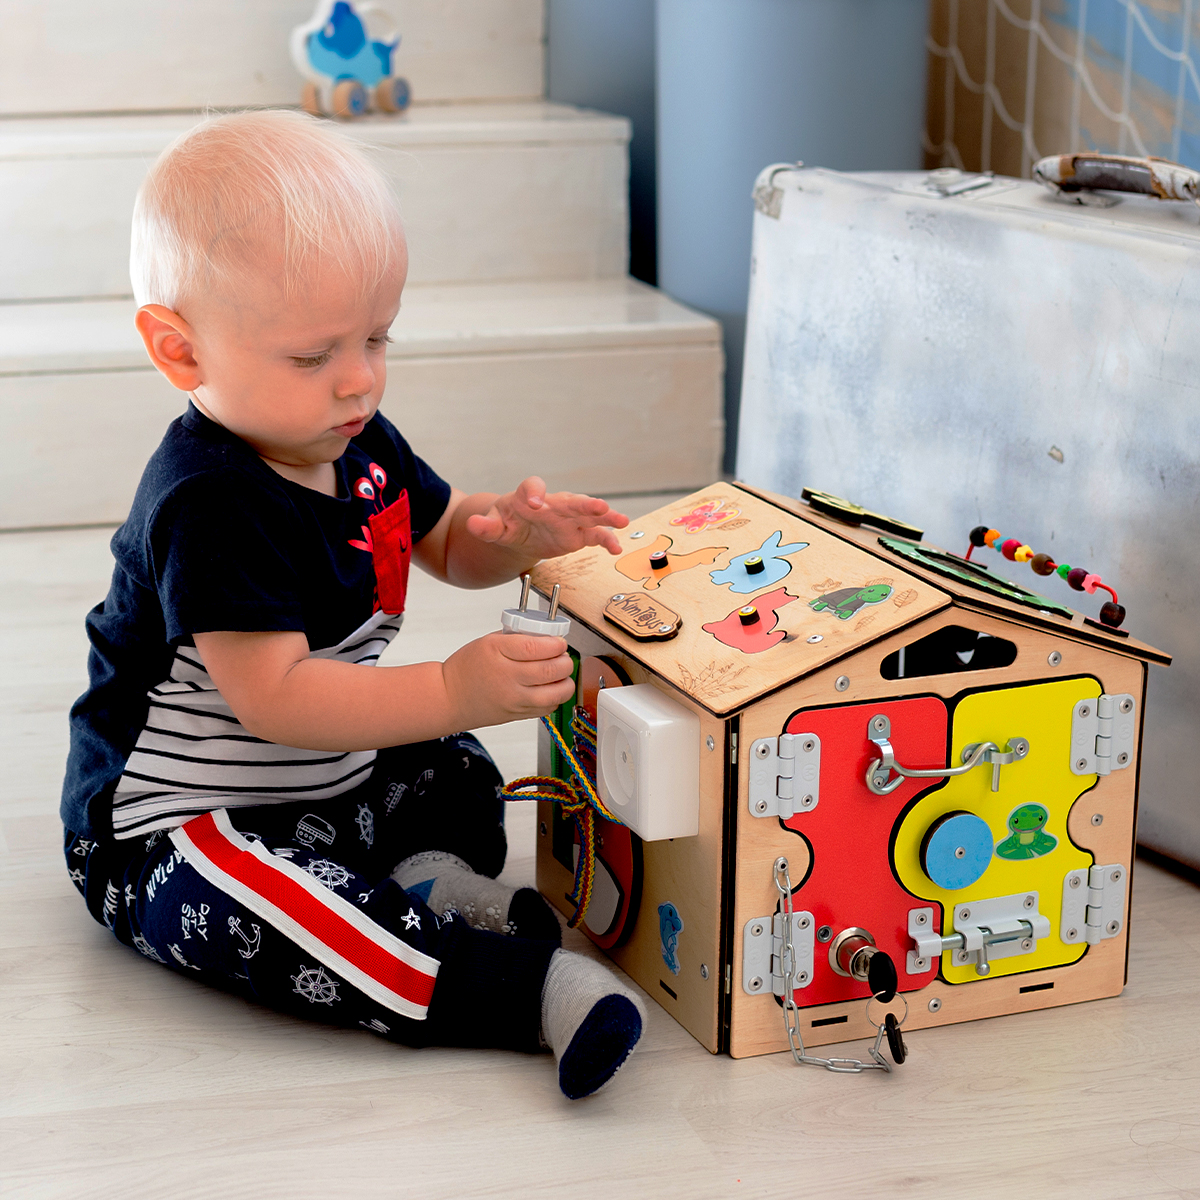 Бизиборд KimToys Домик-игрушка для девочек и мальчиков - фото 15